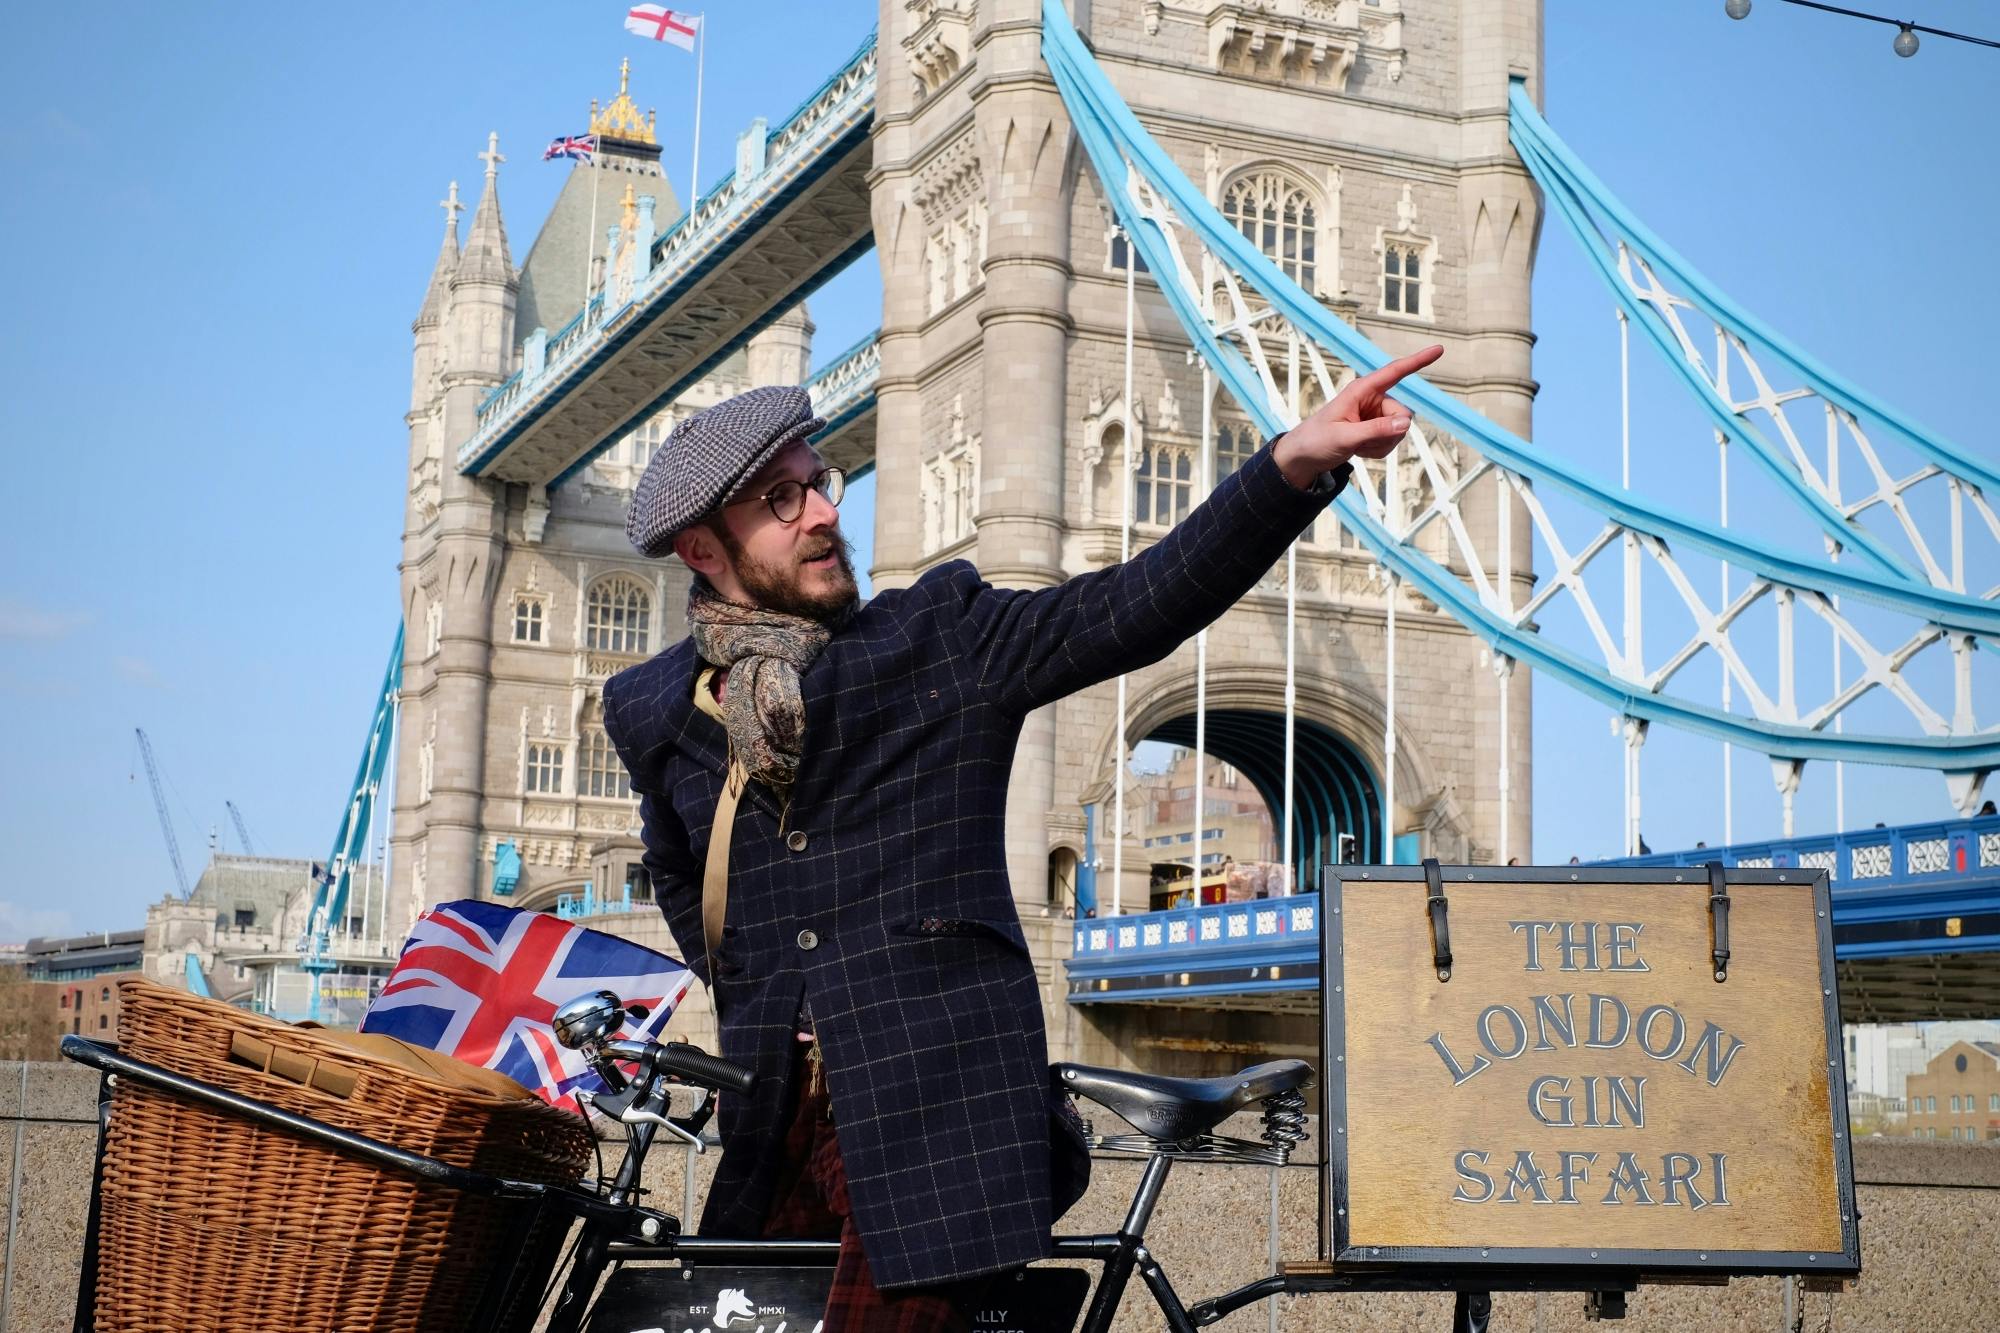 Tour privado en bicicleta "London gin safari" con degustaciones